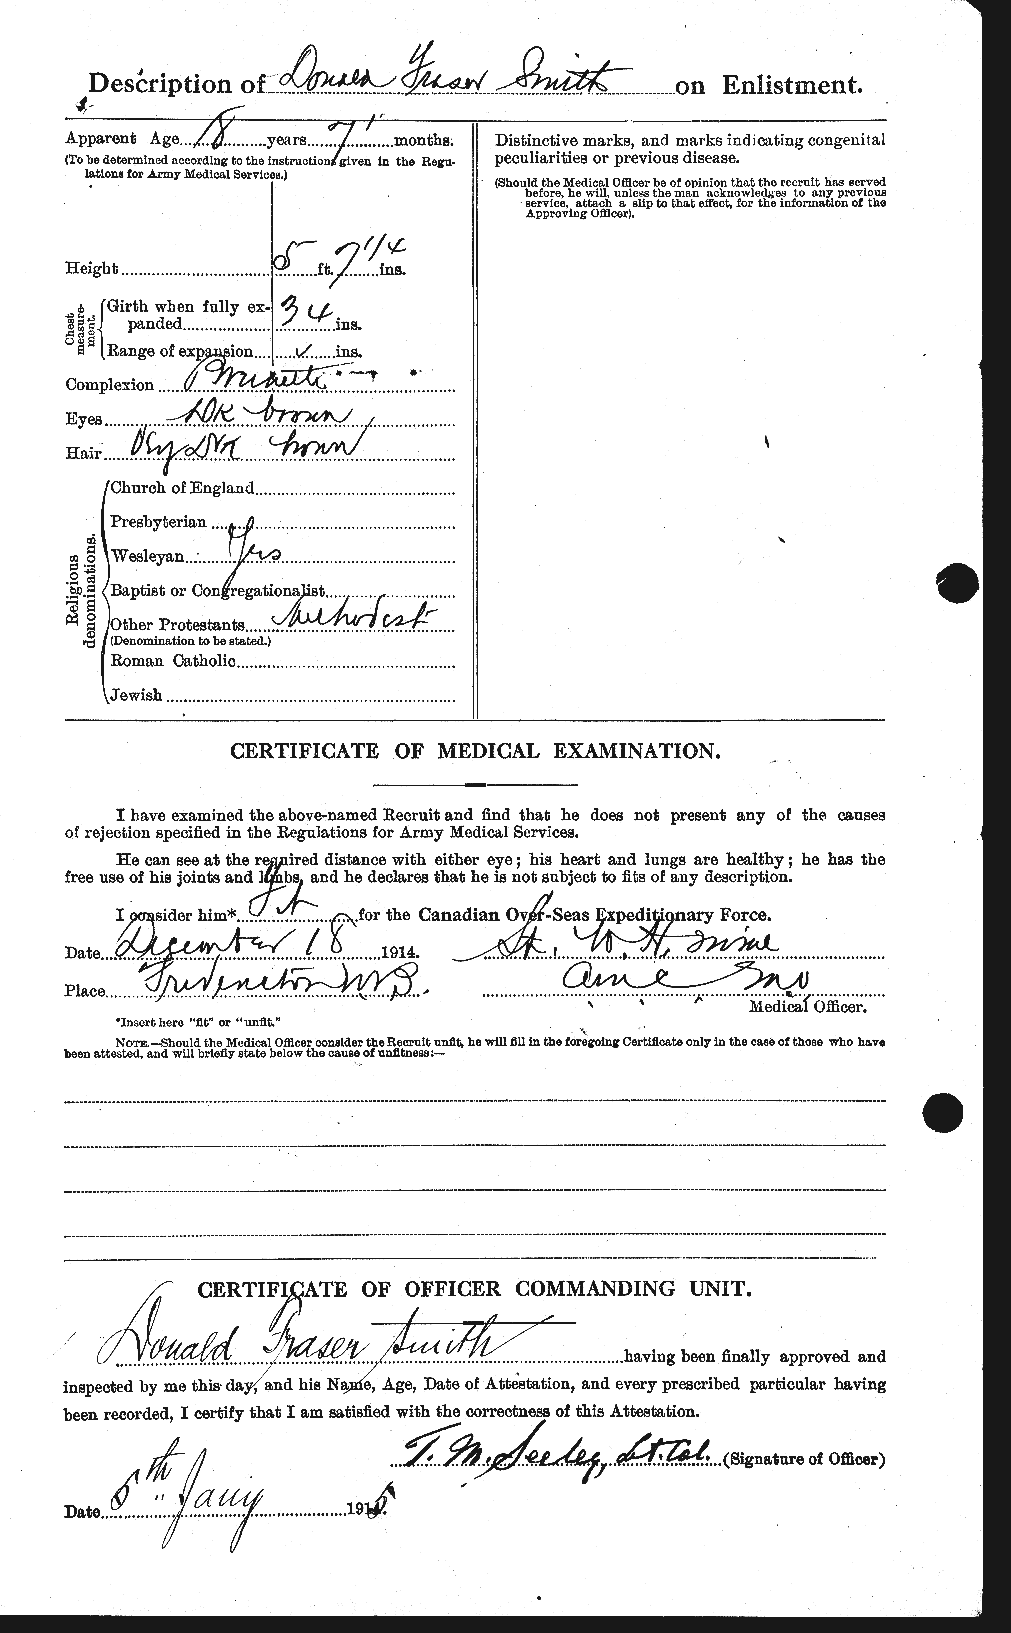 Dossiers du Personnel de la Première Guerre mondiale - CEC 101784b